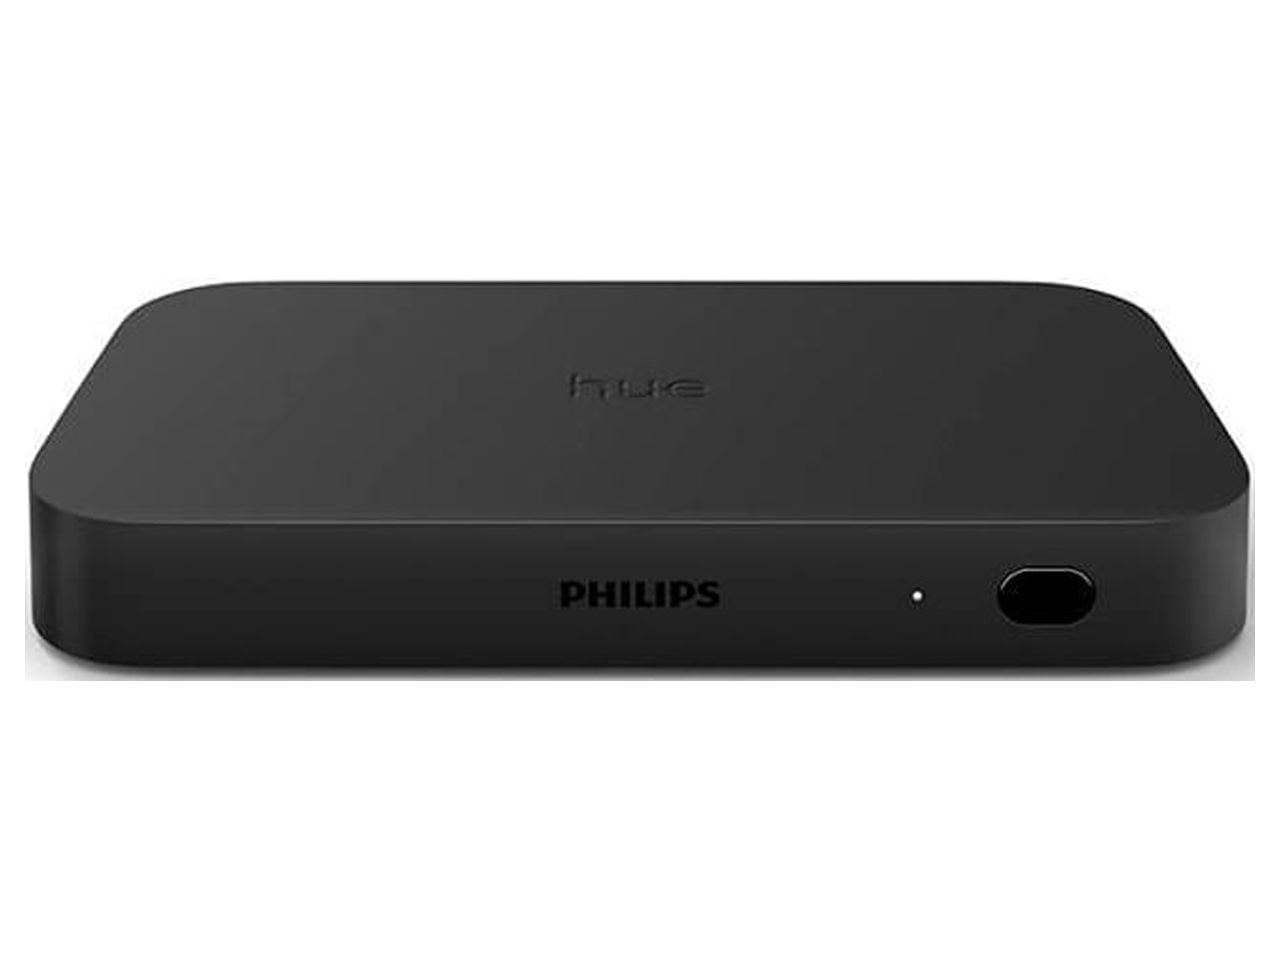 Philips Hue 555227 Play HDMI Sync Box